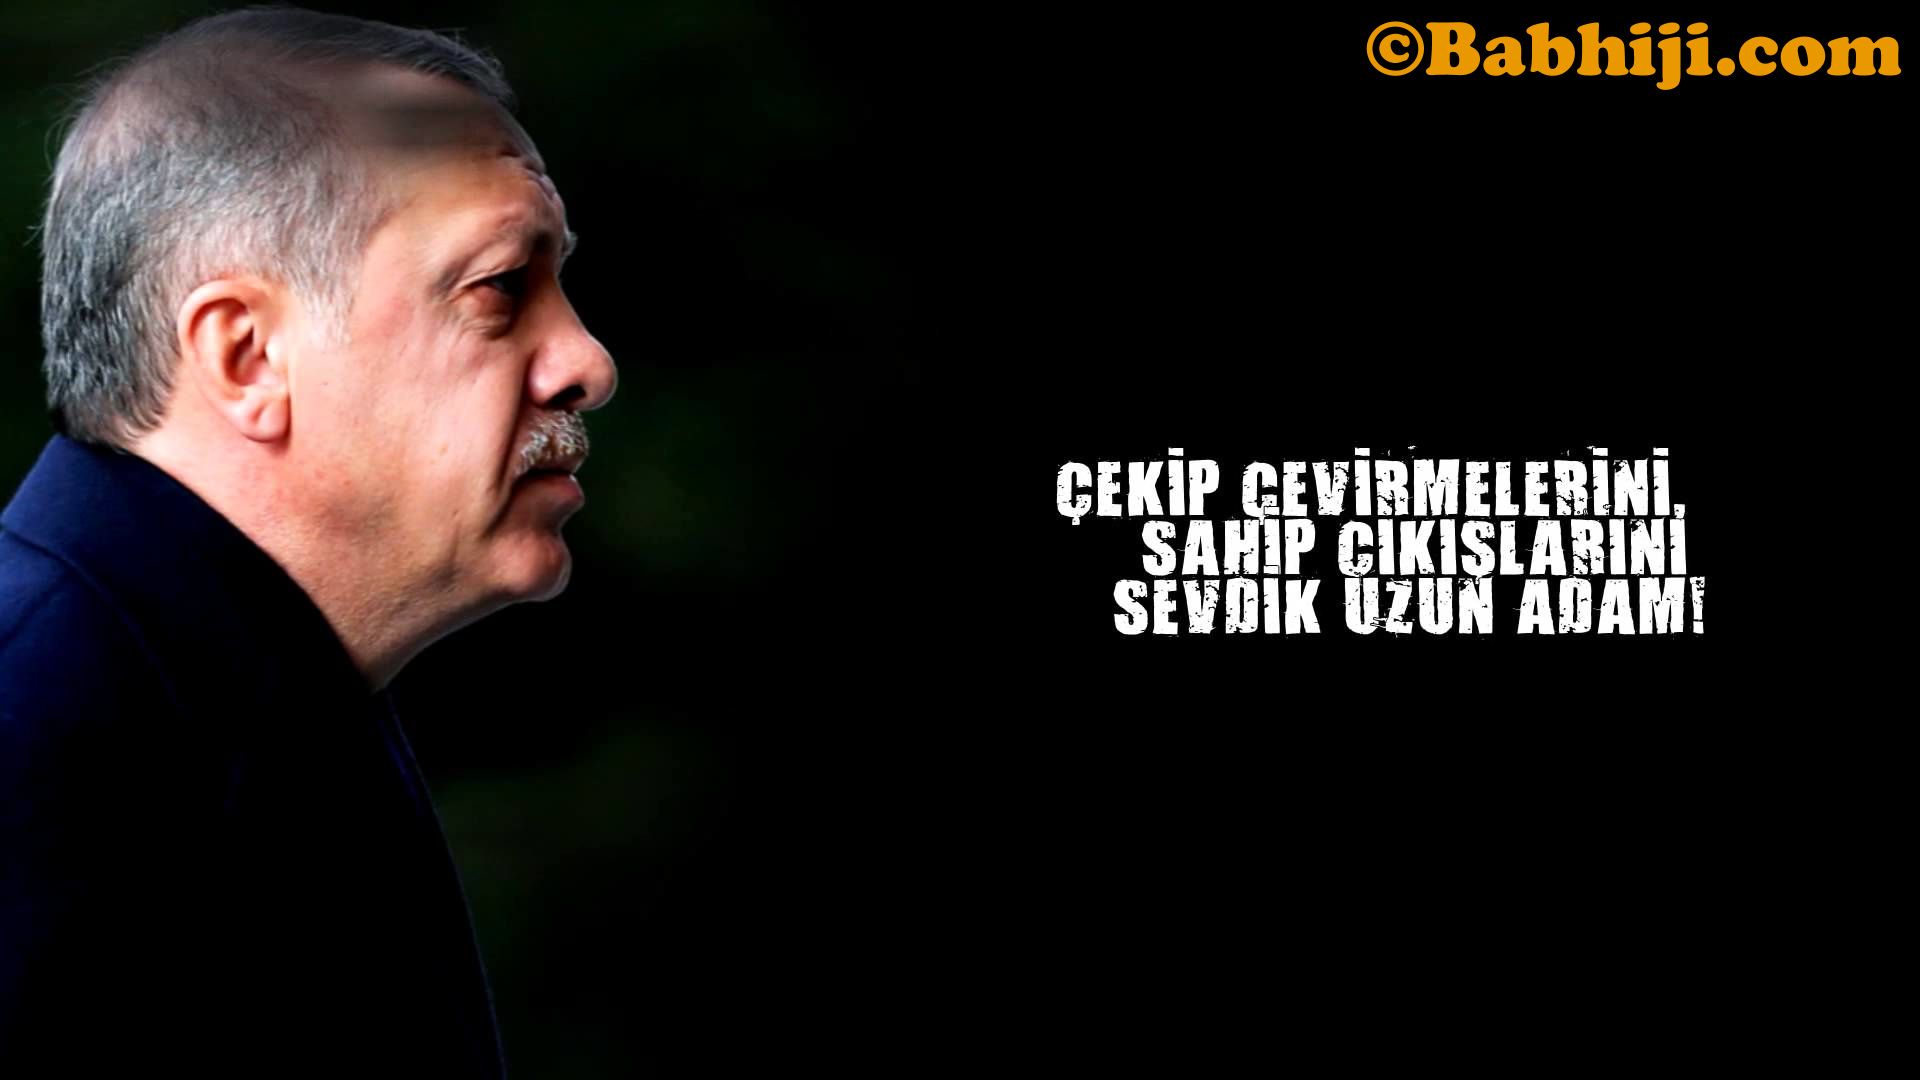 Recep Tayyip Erdoğan, Recep Tayyip Erdoğan Image, Recep Tayyip